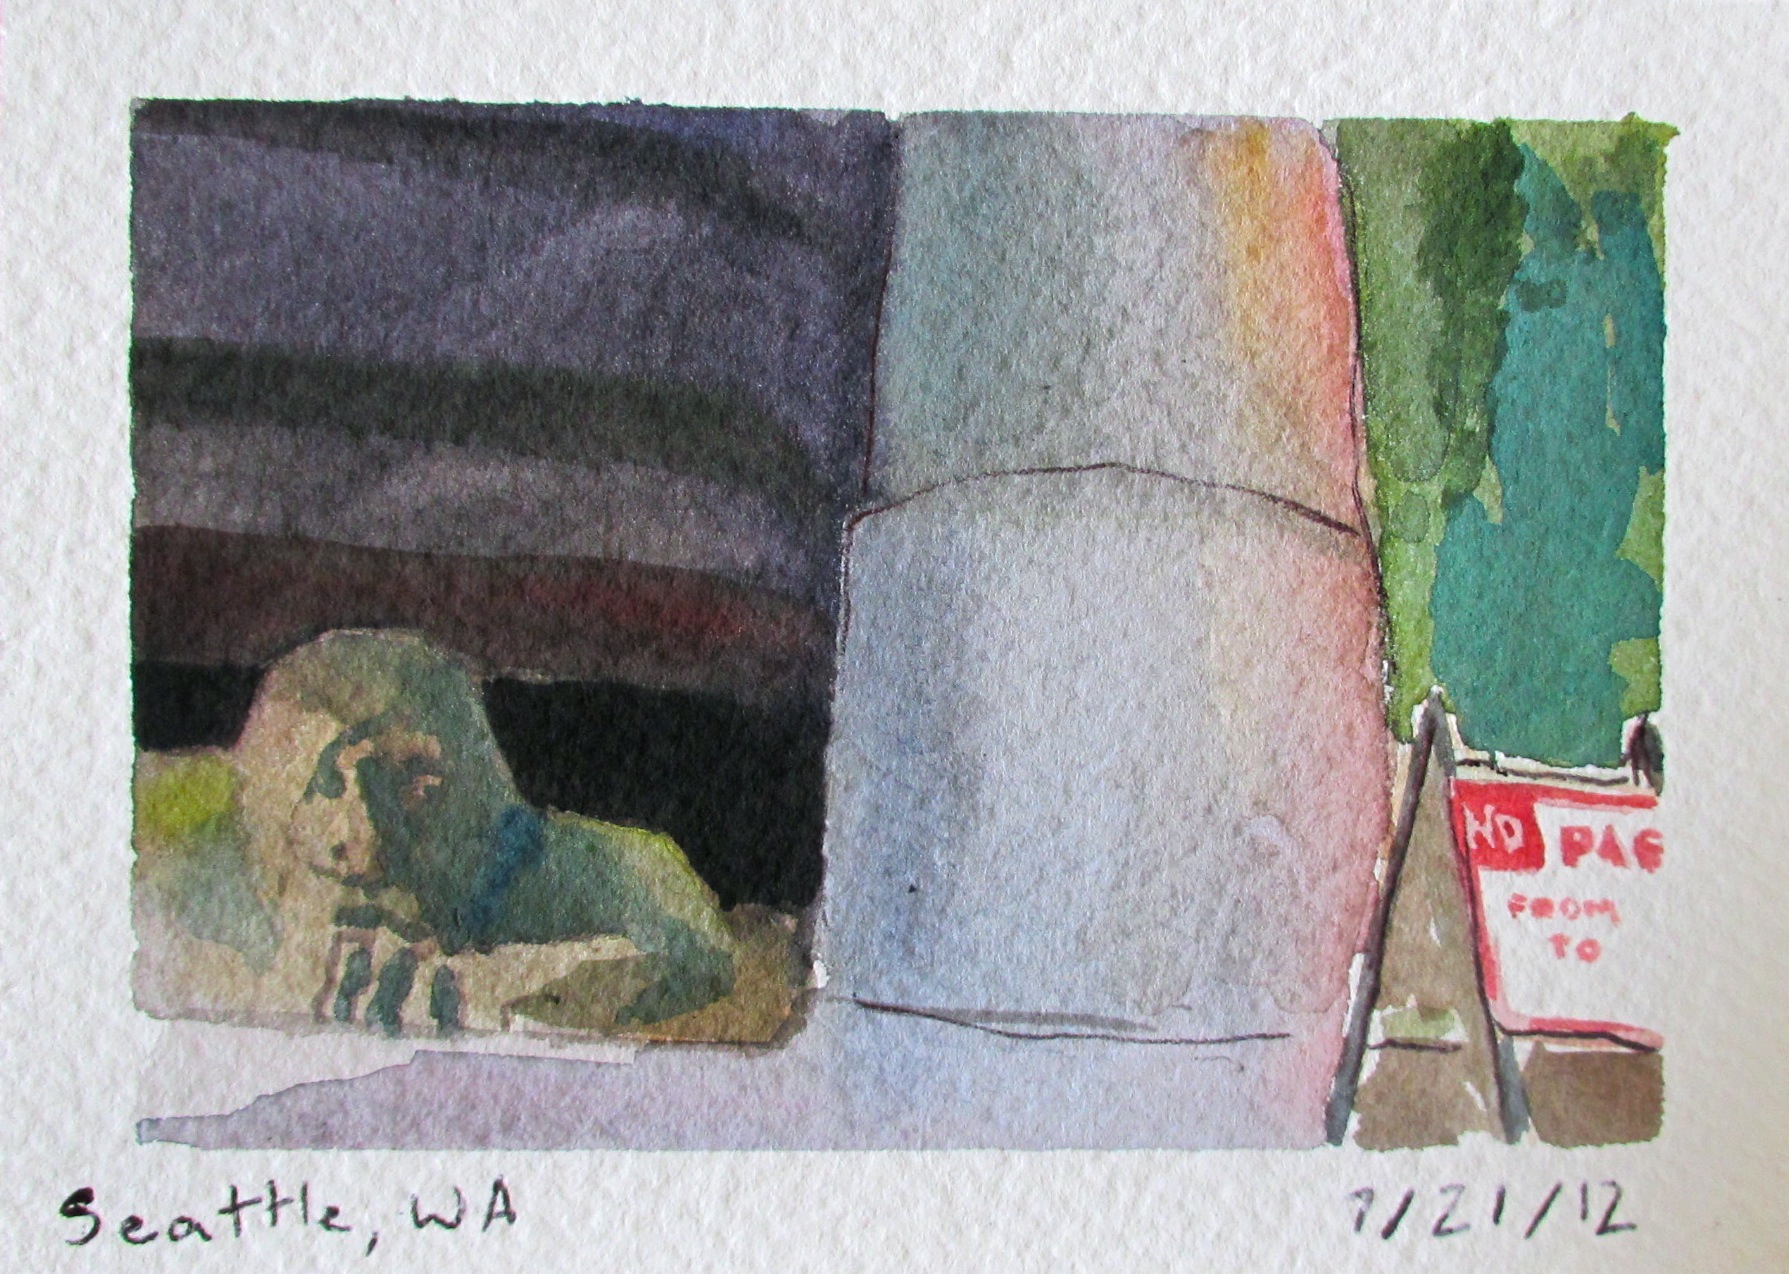 7/21/2012 Watercolor